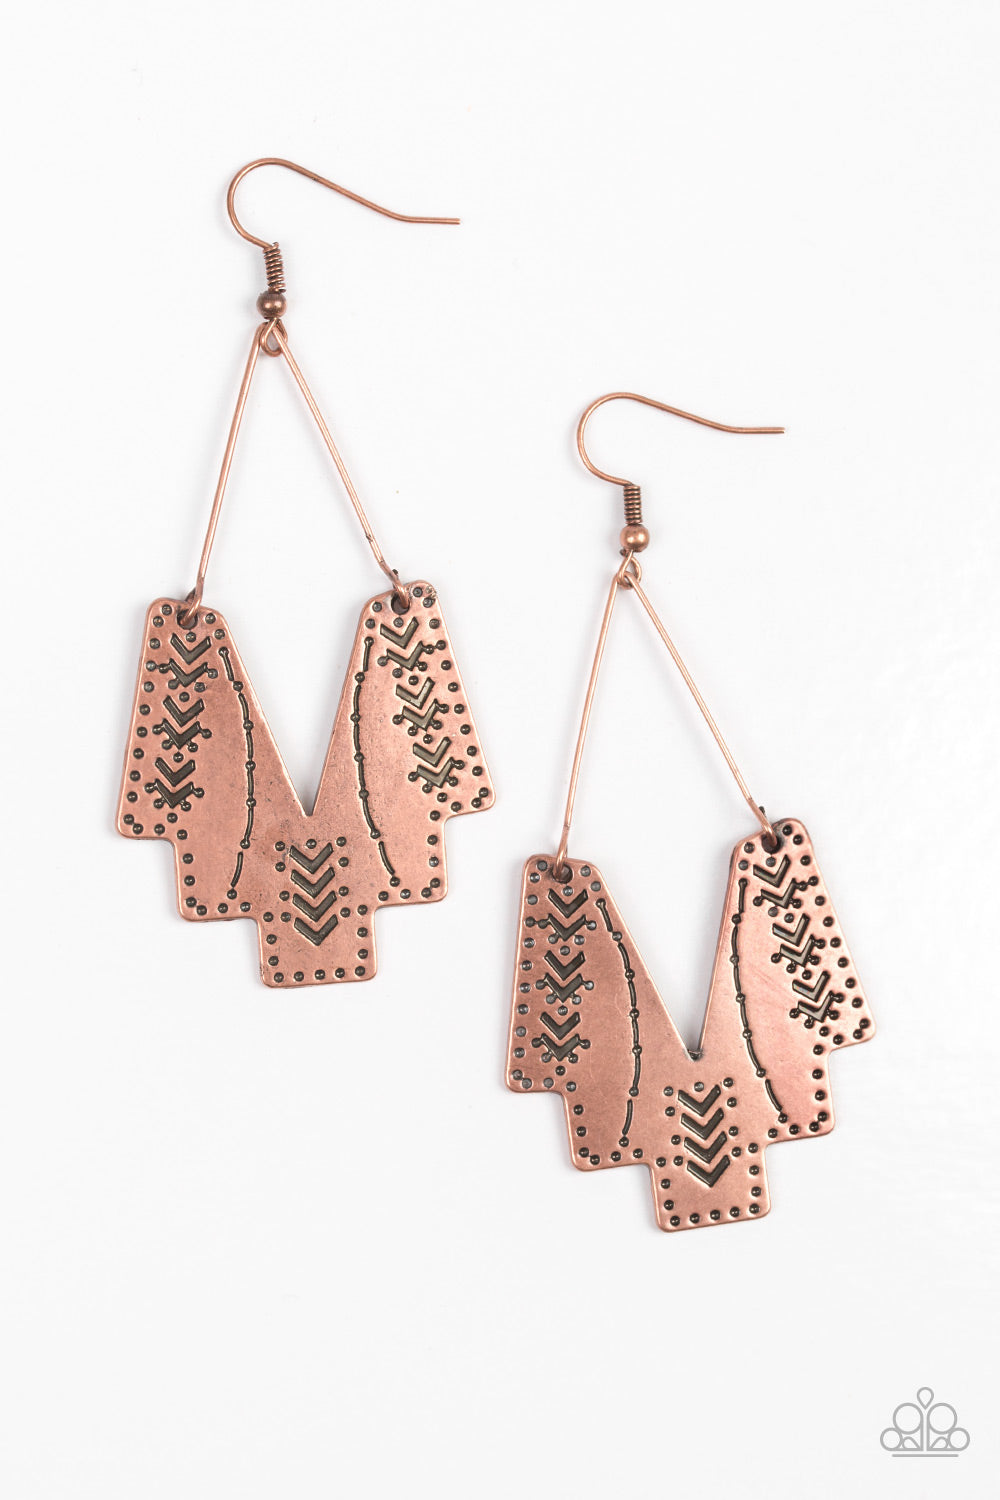 Paparazzi Arizona Adobe - Copper - Earrings - $5 Jewelry With Ashley Swint